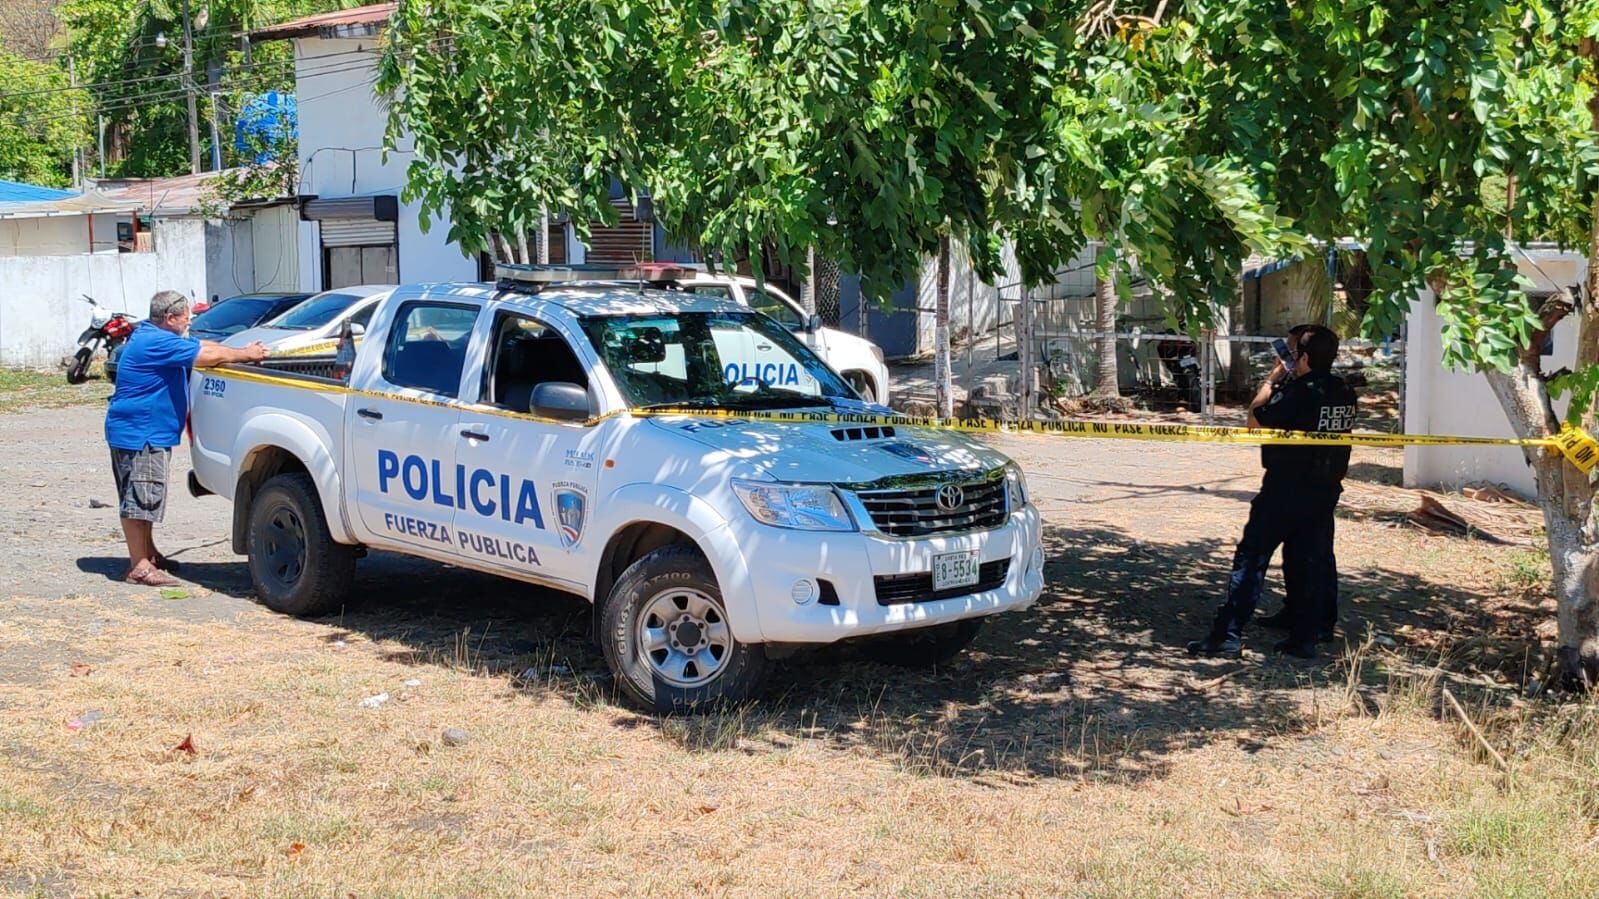 La Fuerza Pública rastreó la zona y ubicó el cuerpo descompuesto. Foto: Andrés Garita.